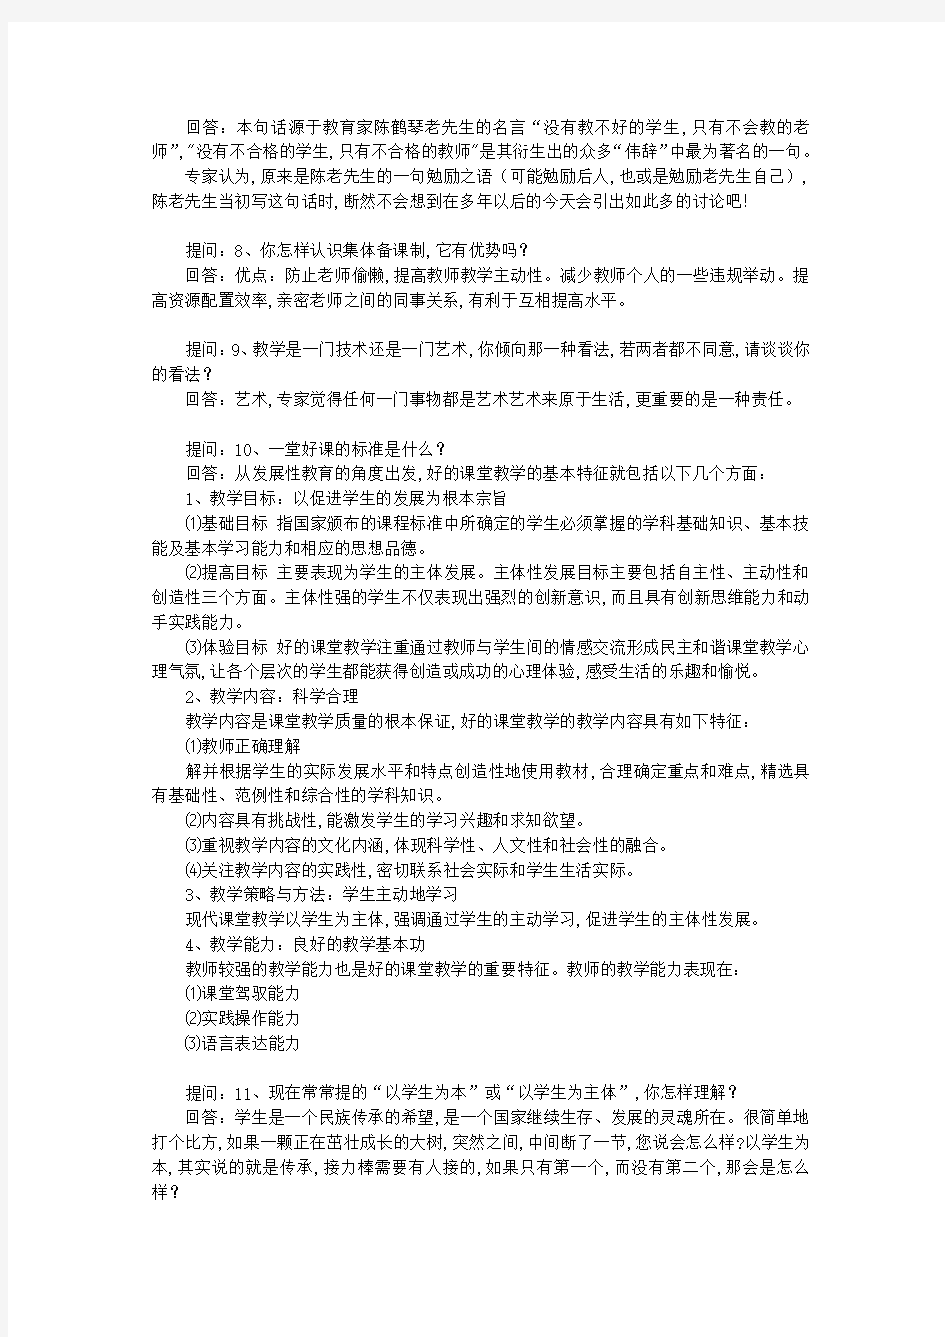 2019江苏省教师招聘考试面试题目汇总